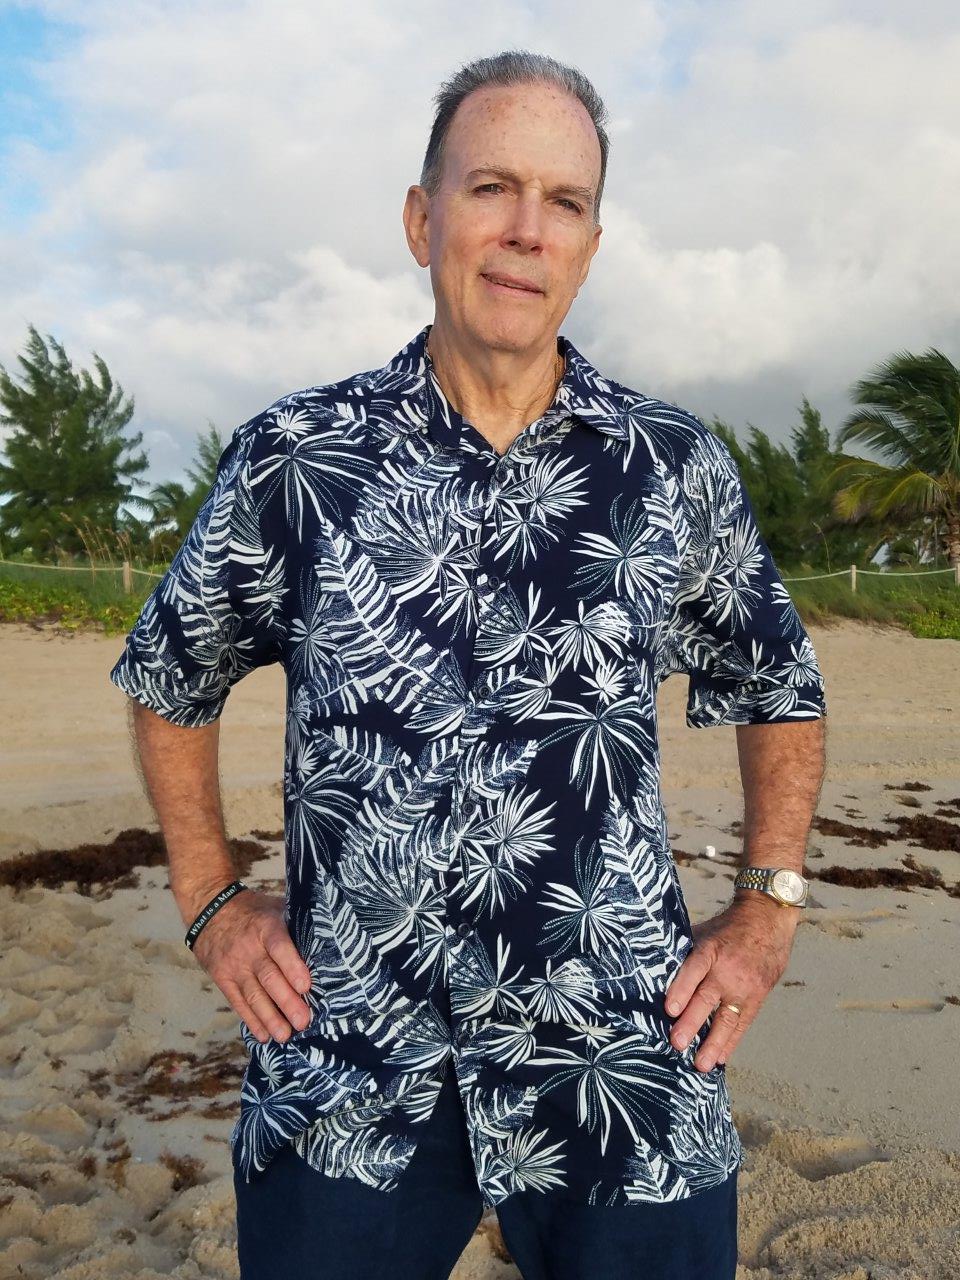 Hawaiian Casual Tropical Print Shirt Navy 5939-ONE MEDIUM !!! SOLD OUT Men's Casual Printed Shirt Gray Made in Miami,USA D'Accord 5973 - Guayabera, Casual Shirts, and Bottom Shirts